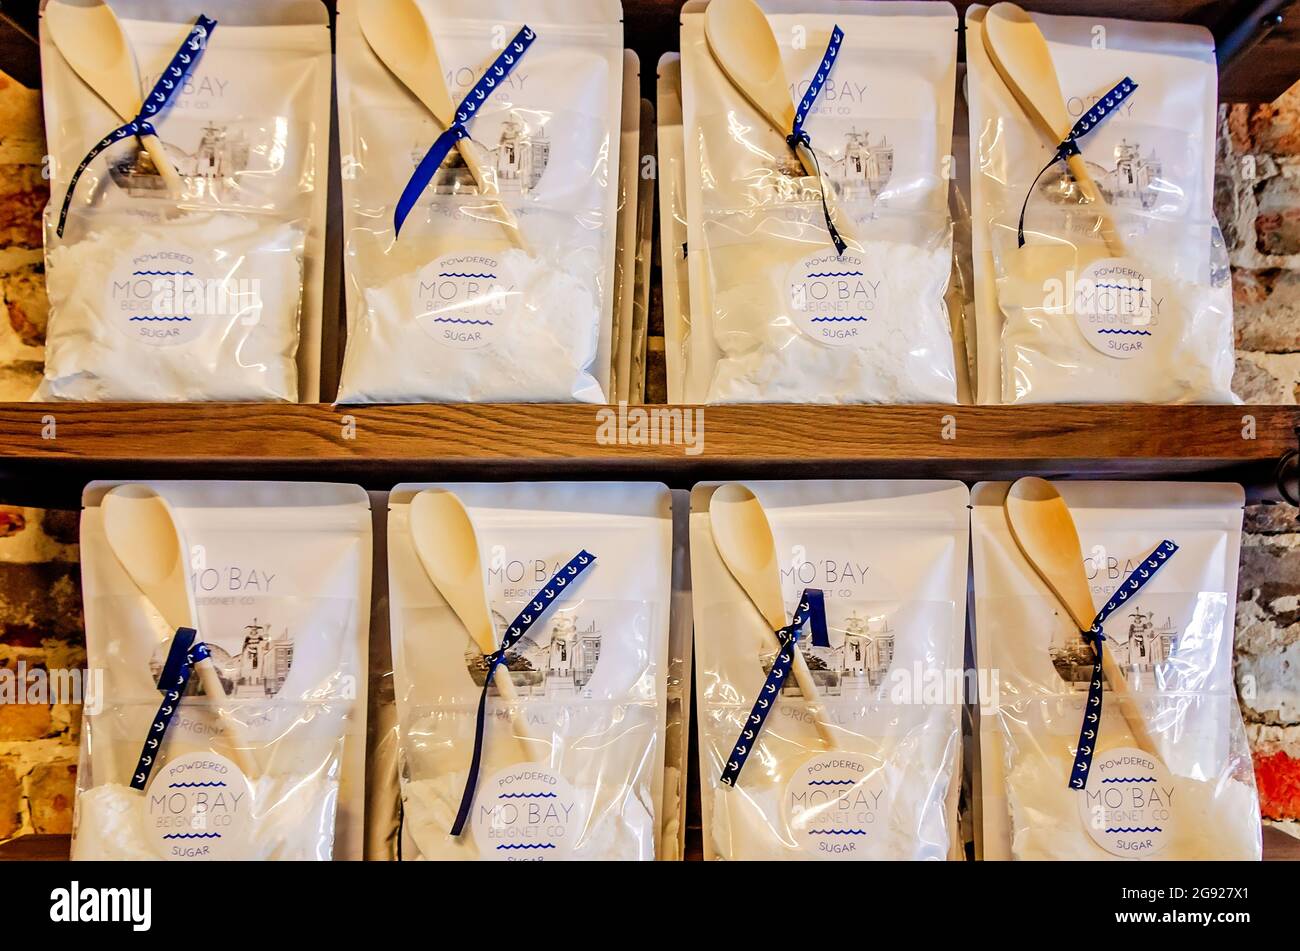 Confezioni regalo di miscela di beignet, zucchero in polvere e un cucchiaio di legno sono venduti presso Mo’ Bay Beignet Co., 23 luglio 2021, a Mobile, Alabama. Il negozio di bignet Foto Stock